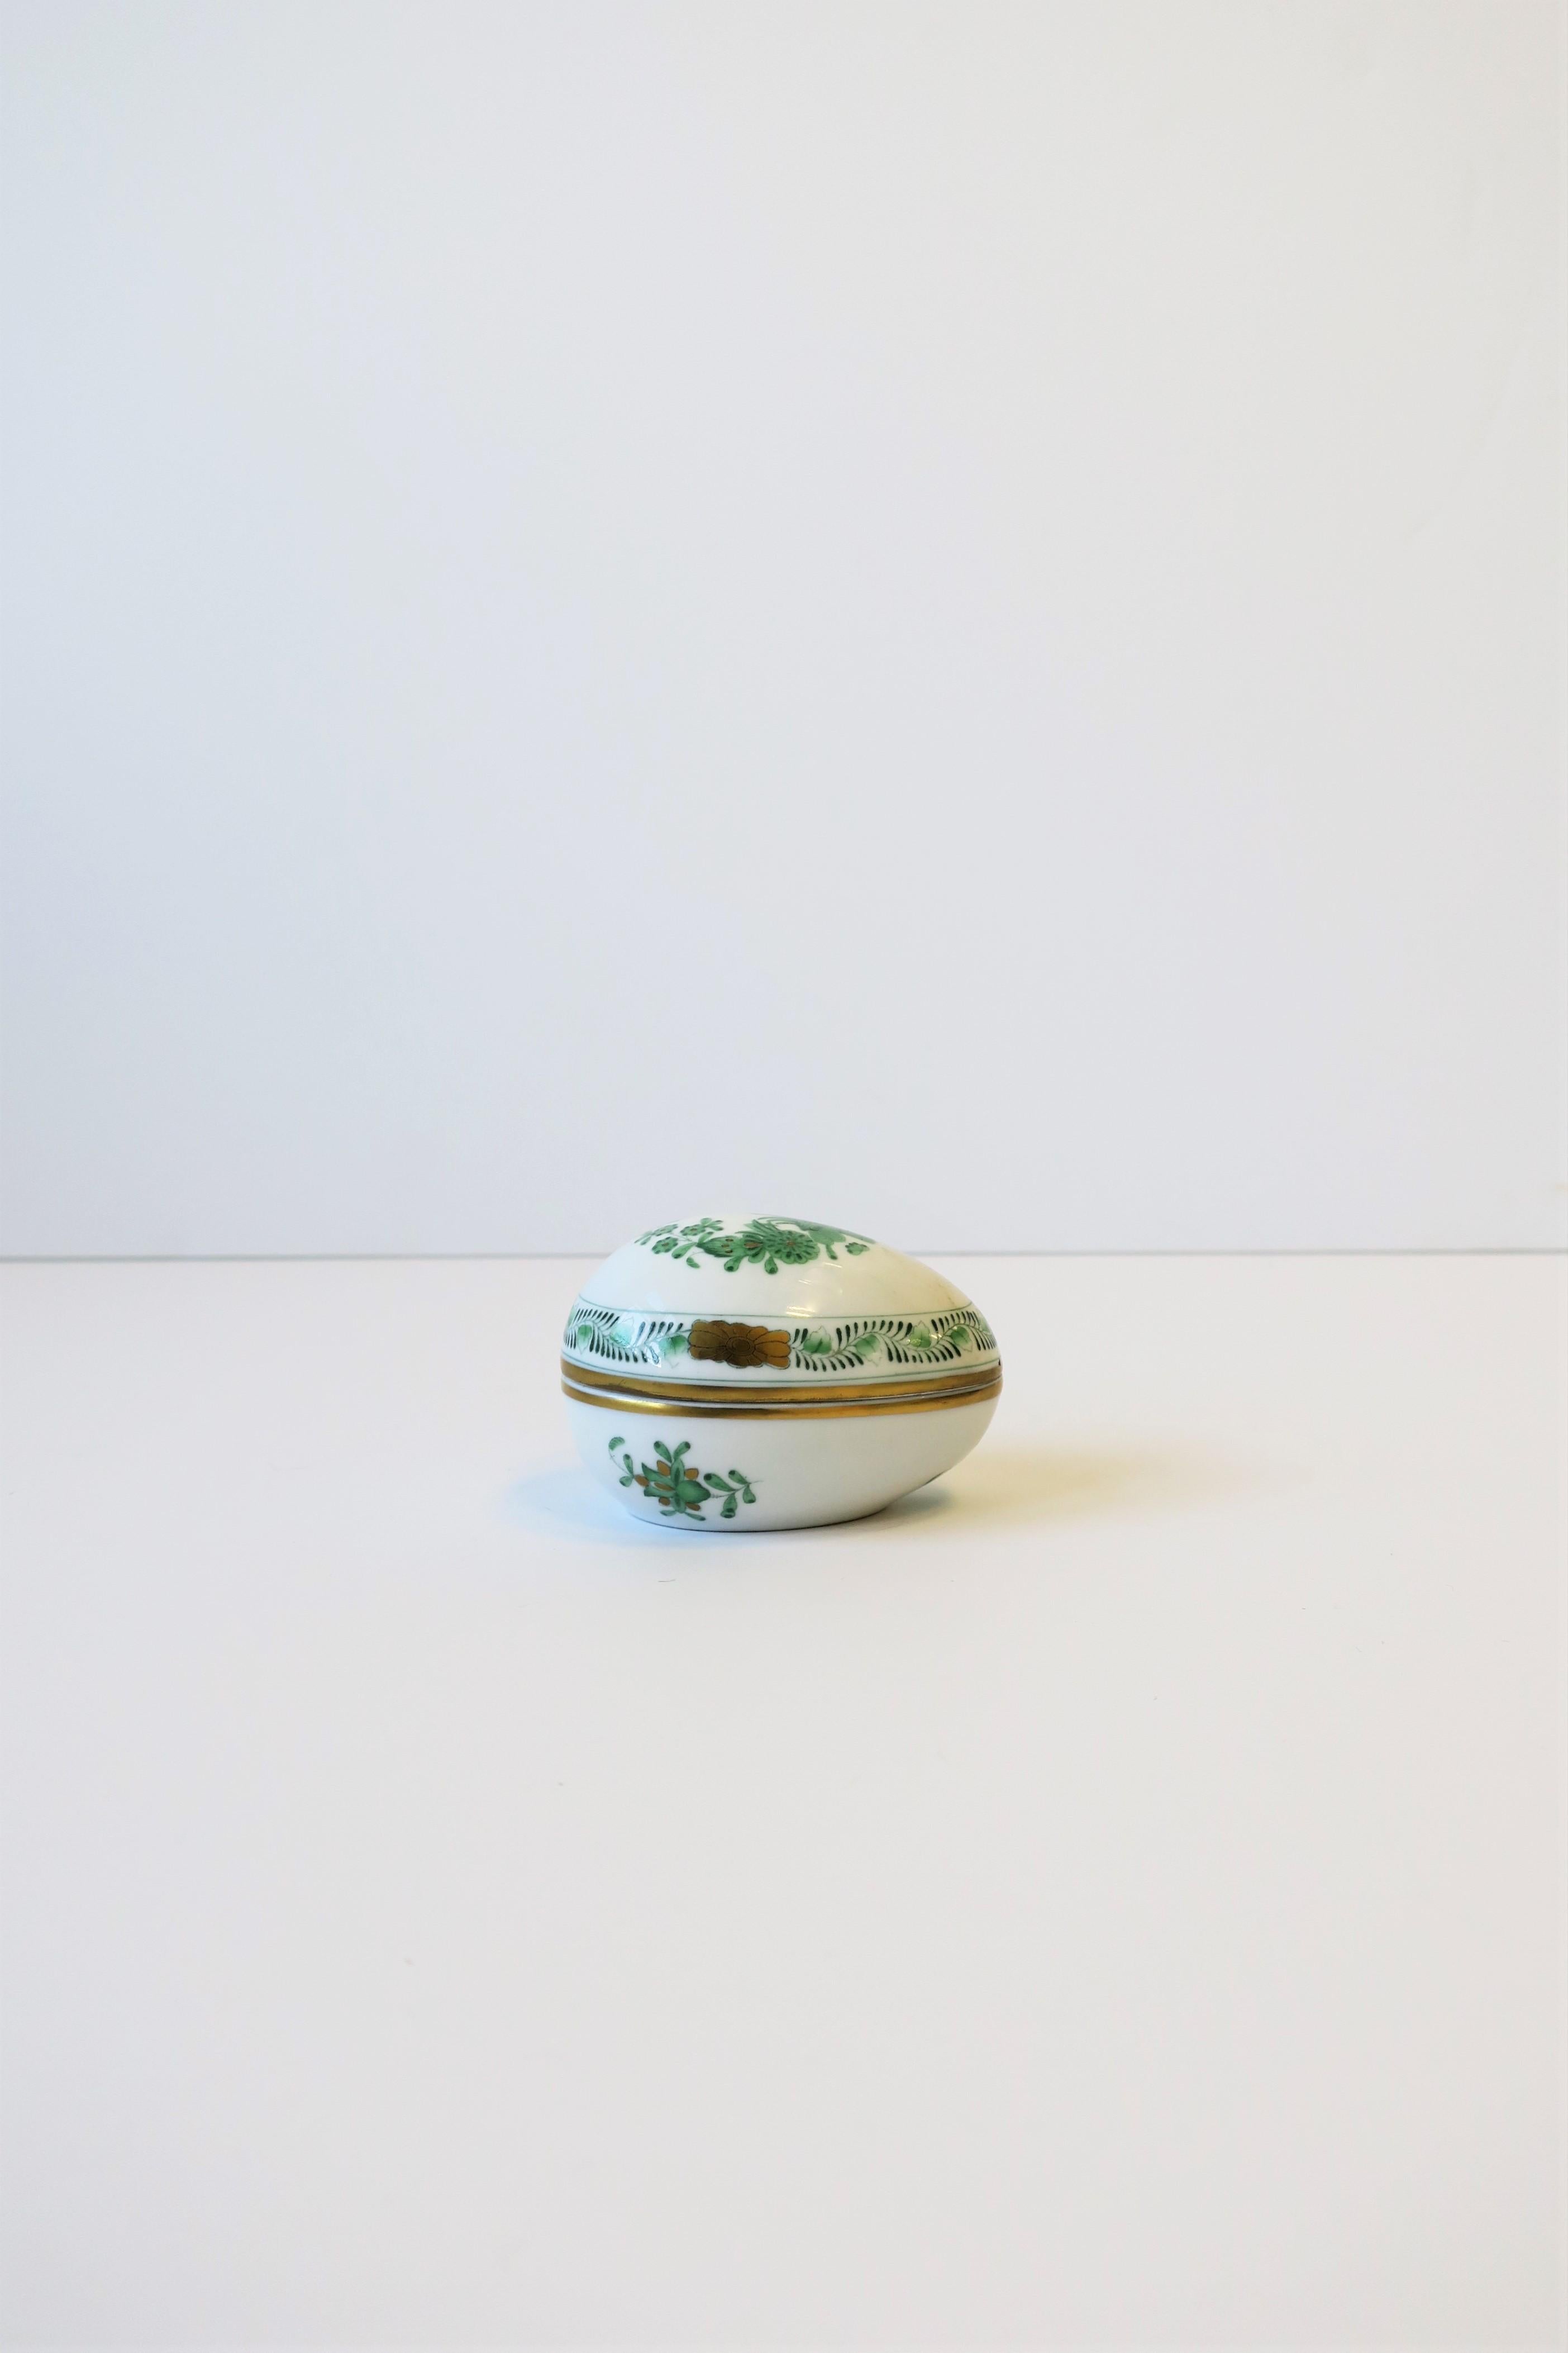 Schöne eiförmige Dose aus weißem, handbemaltem Porzellan der Luxusmanufaktur HEREND, Ungarn, um das 20. Jahrhundert. Diese eiförmige Dose aus weißem Herend-Porzellan ist von einem Künstler in smaragdgrünen und goldenen Farbtönen mit einem modernen